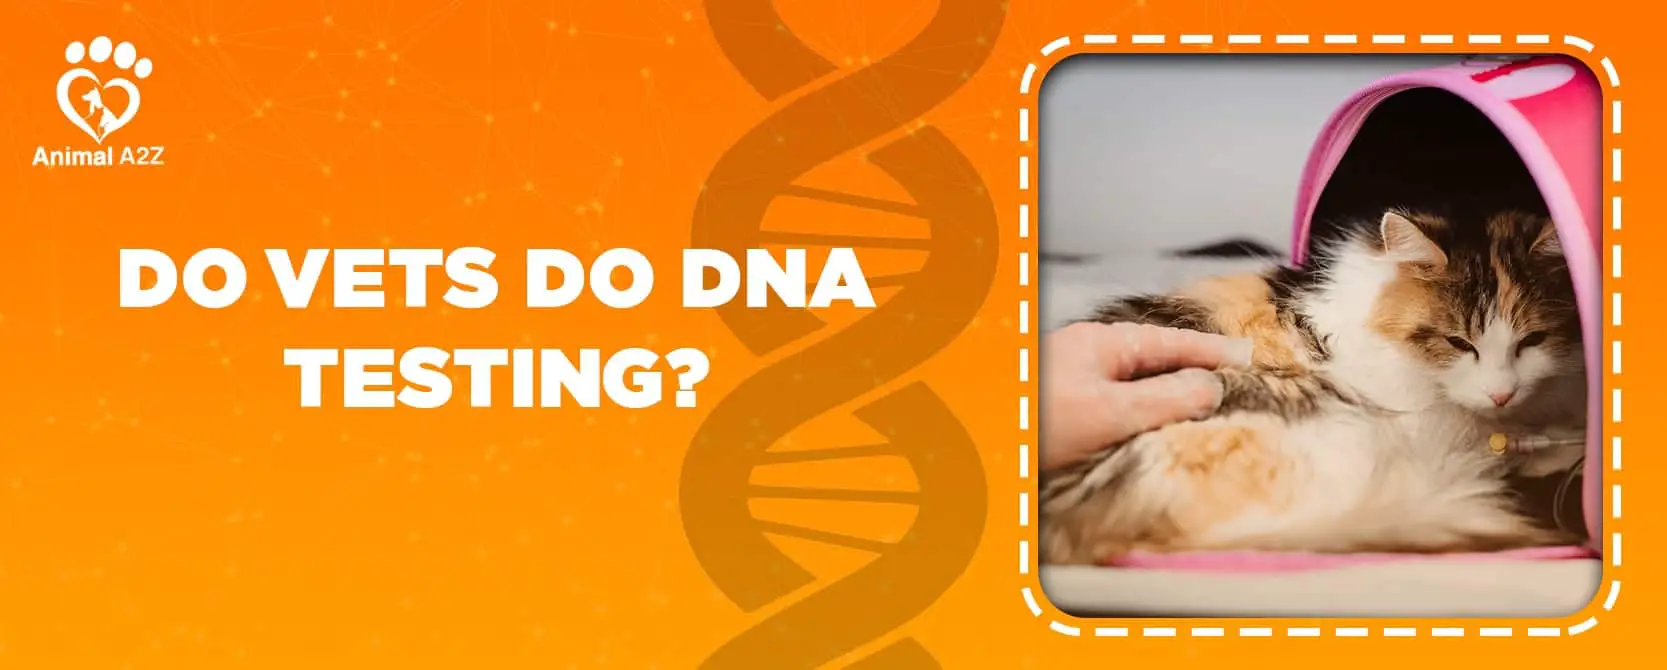 ¿Los veterinarios hacen pruebas de ADN?